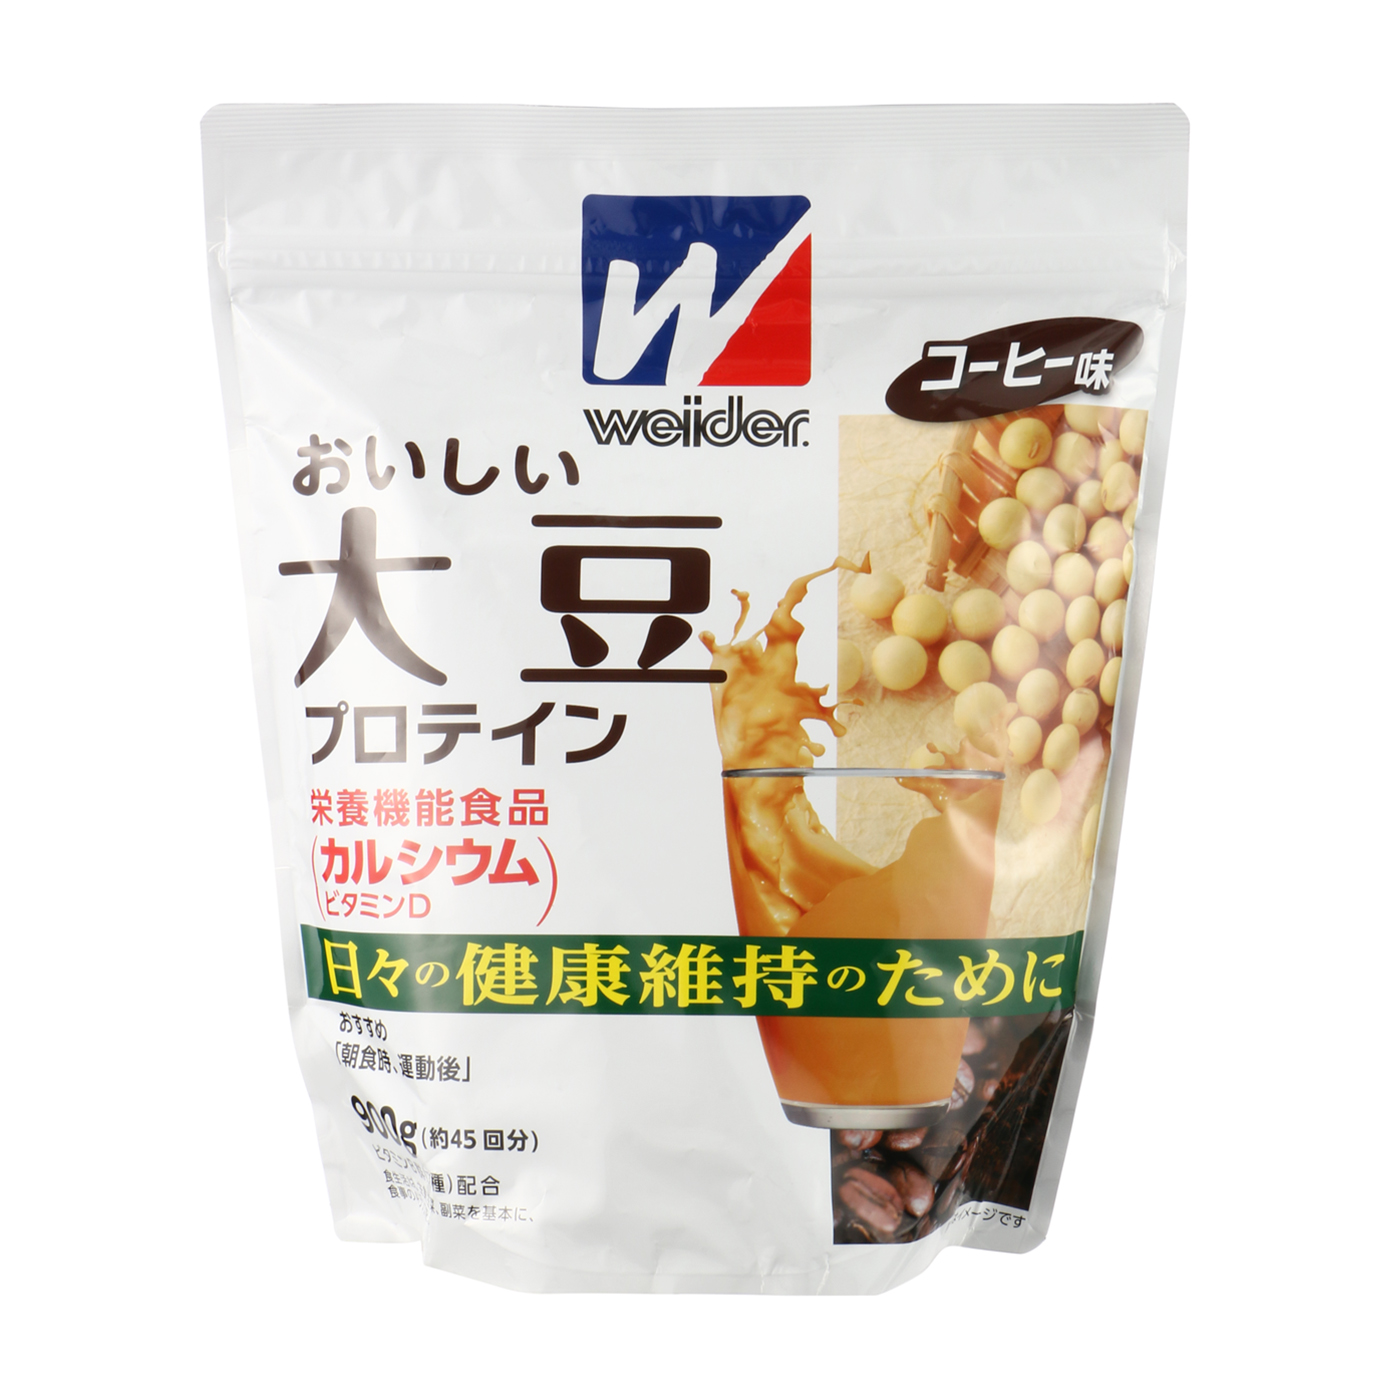 オリジナル おいしい大豆プロテイン コーヒー味 900g opri.sg